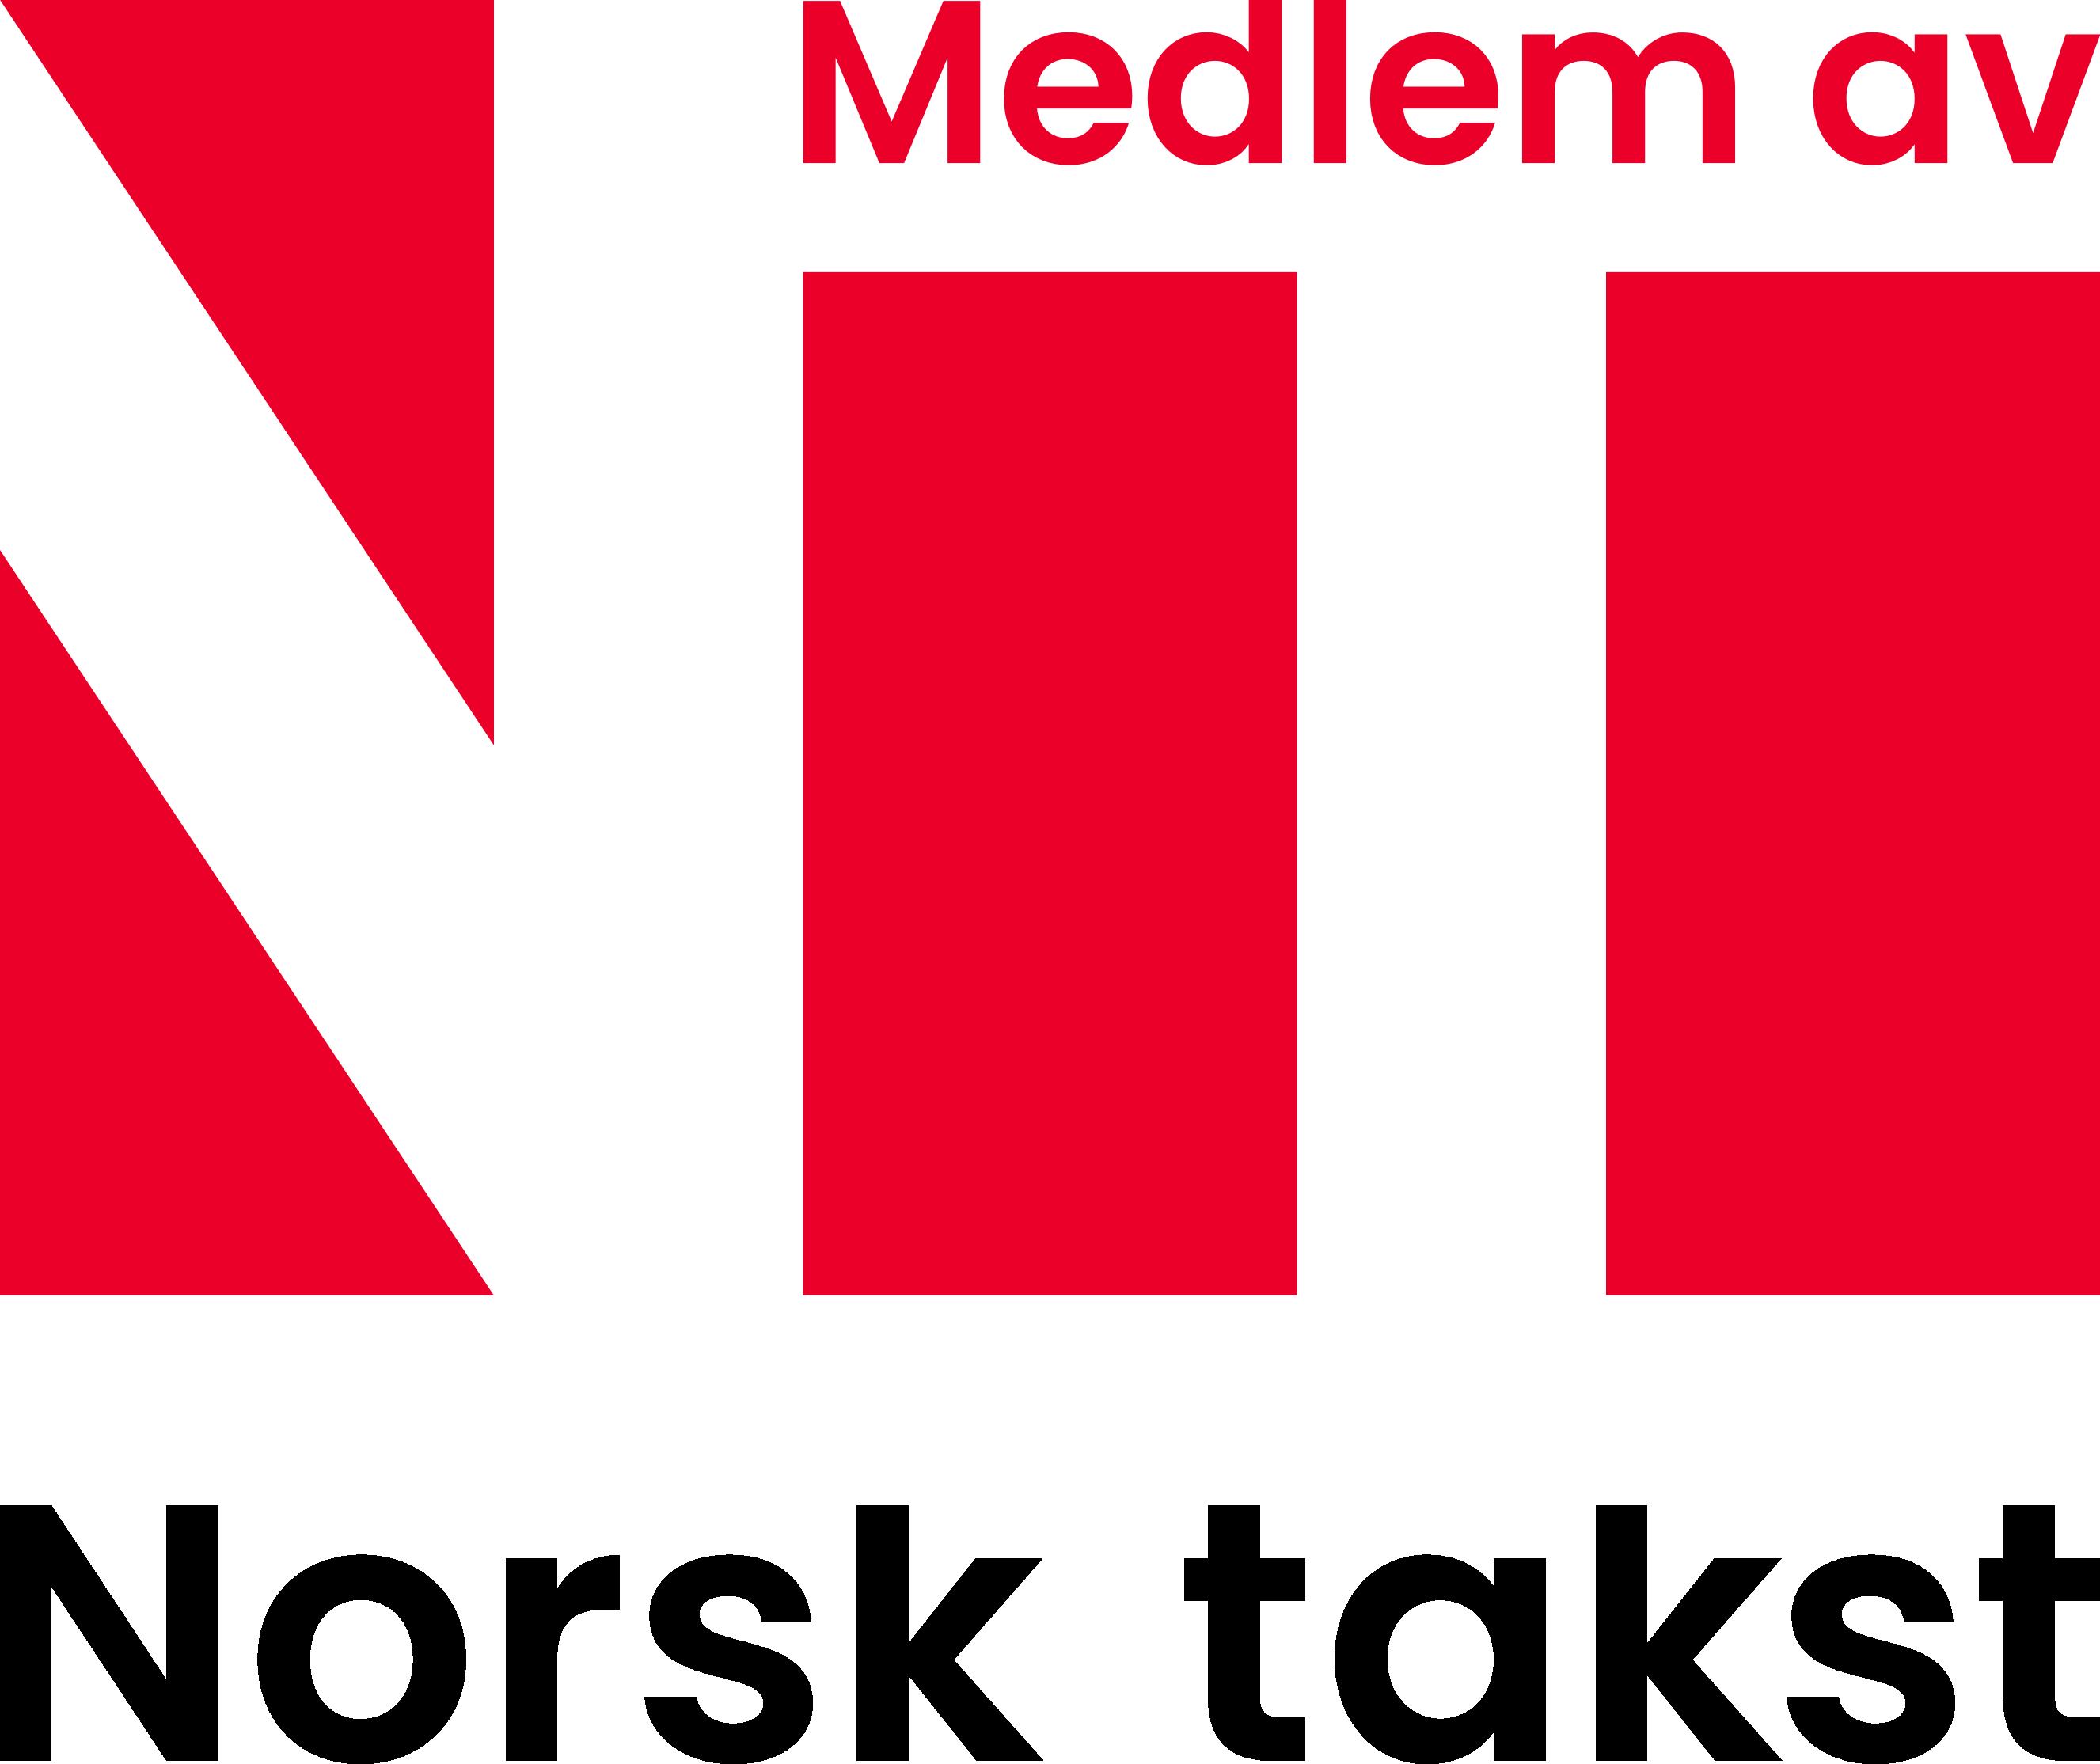 Norsk takst logo